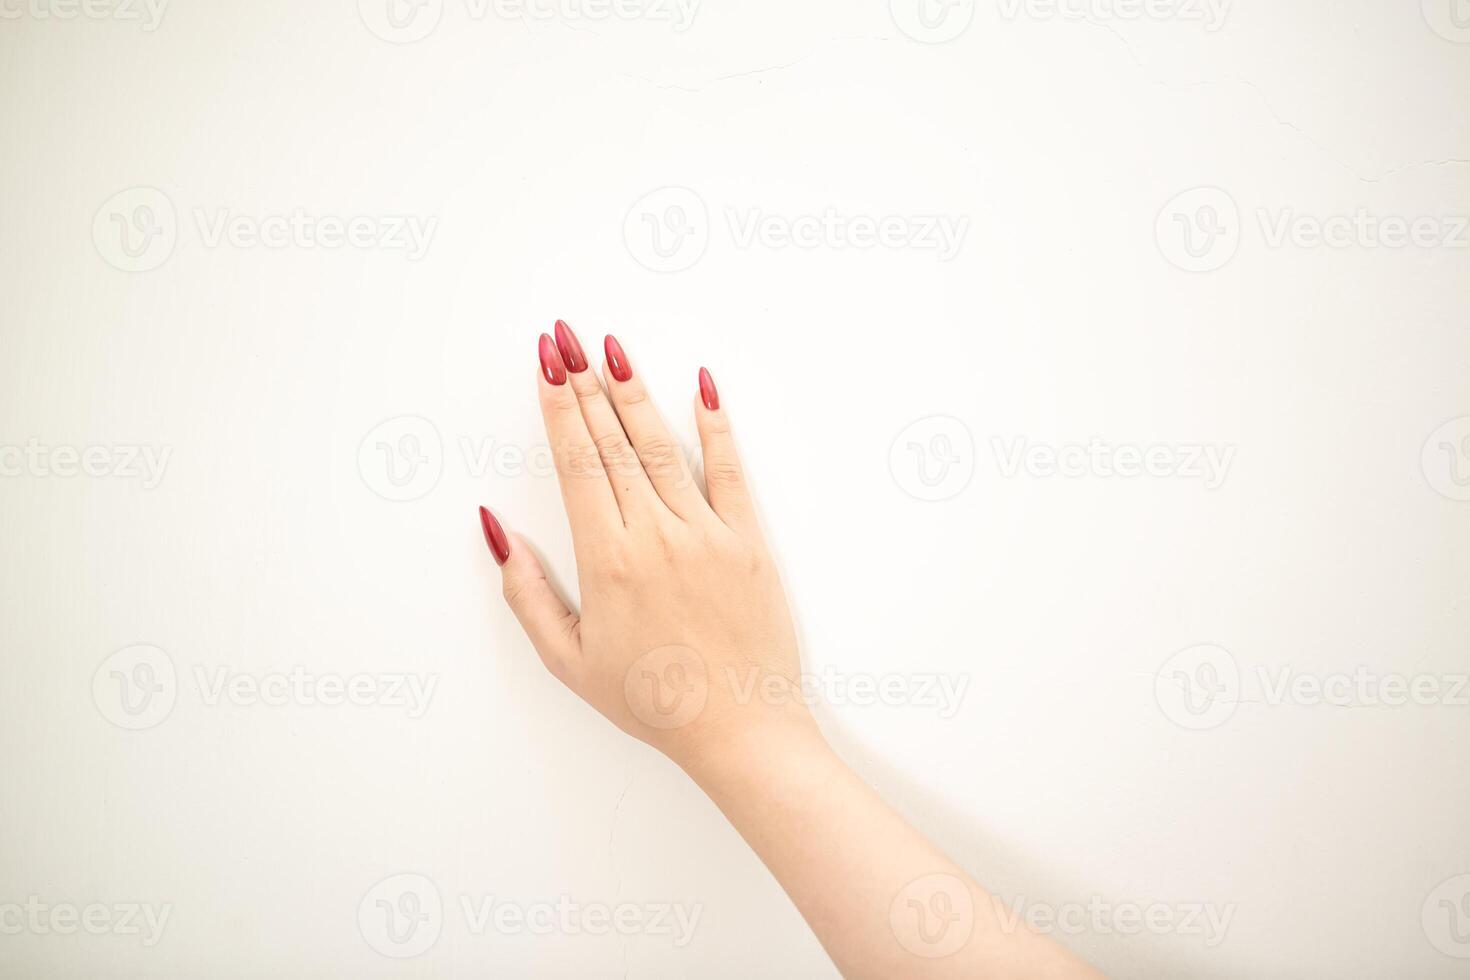 main utilisation ongles art montrer du doigt à quelque chose et faire une signe sur blanc Contexte photo